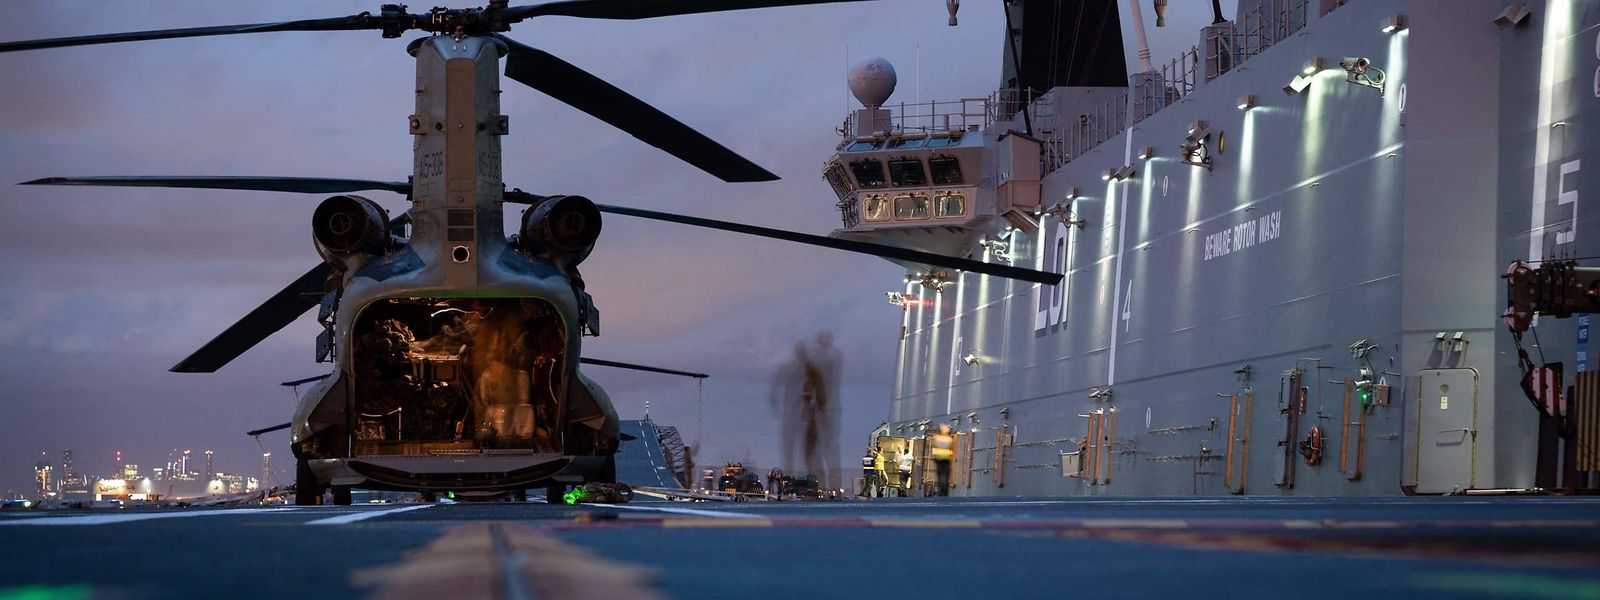 Força Aérea Australiana e pela Força de Defesa Australiana a embarcar num helicóptero do exército australiano CH-47 Chinook heavy-lift antes de deixar o porto de Brisbane, para prestar assistência humanitária a Tonga 